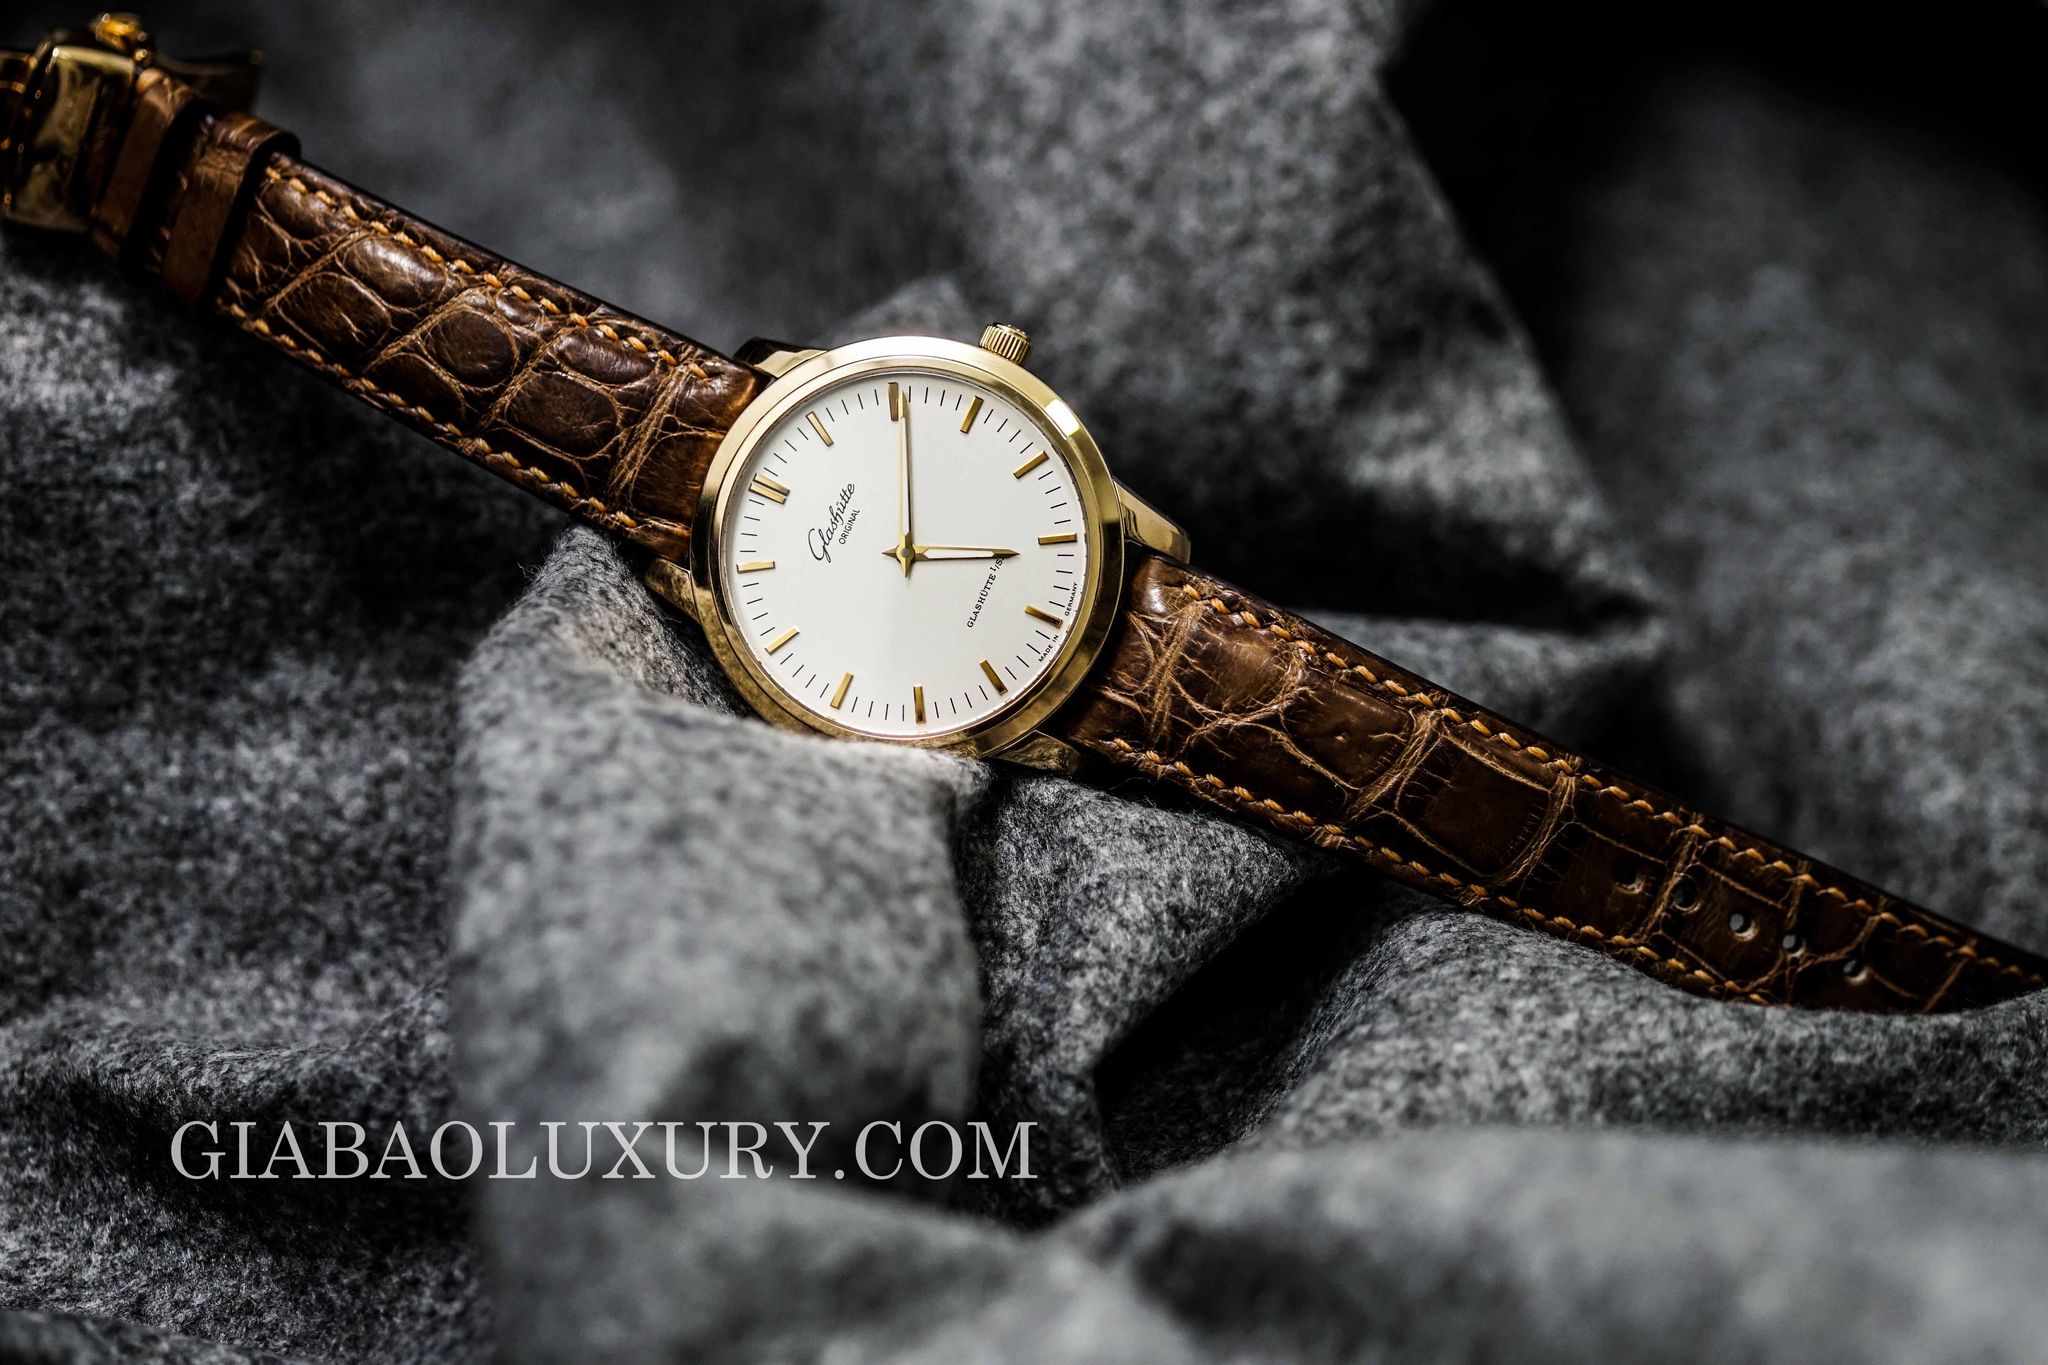 Thu mua đồng hồ Glashutte Original chính hãng tại Gia Bảo Luxury